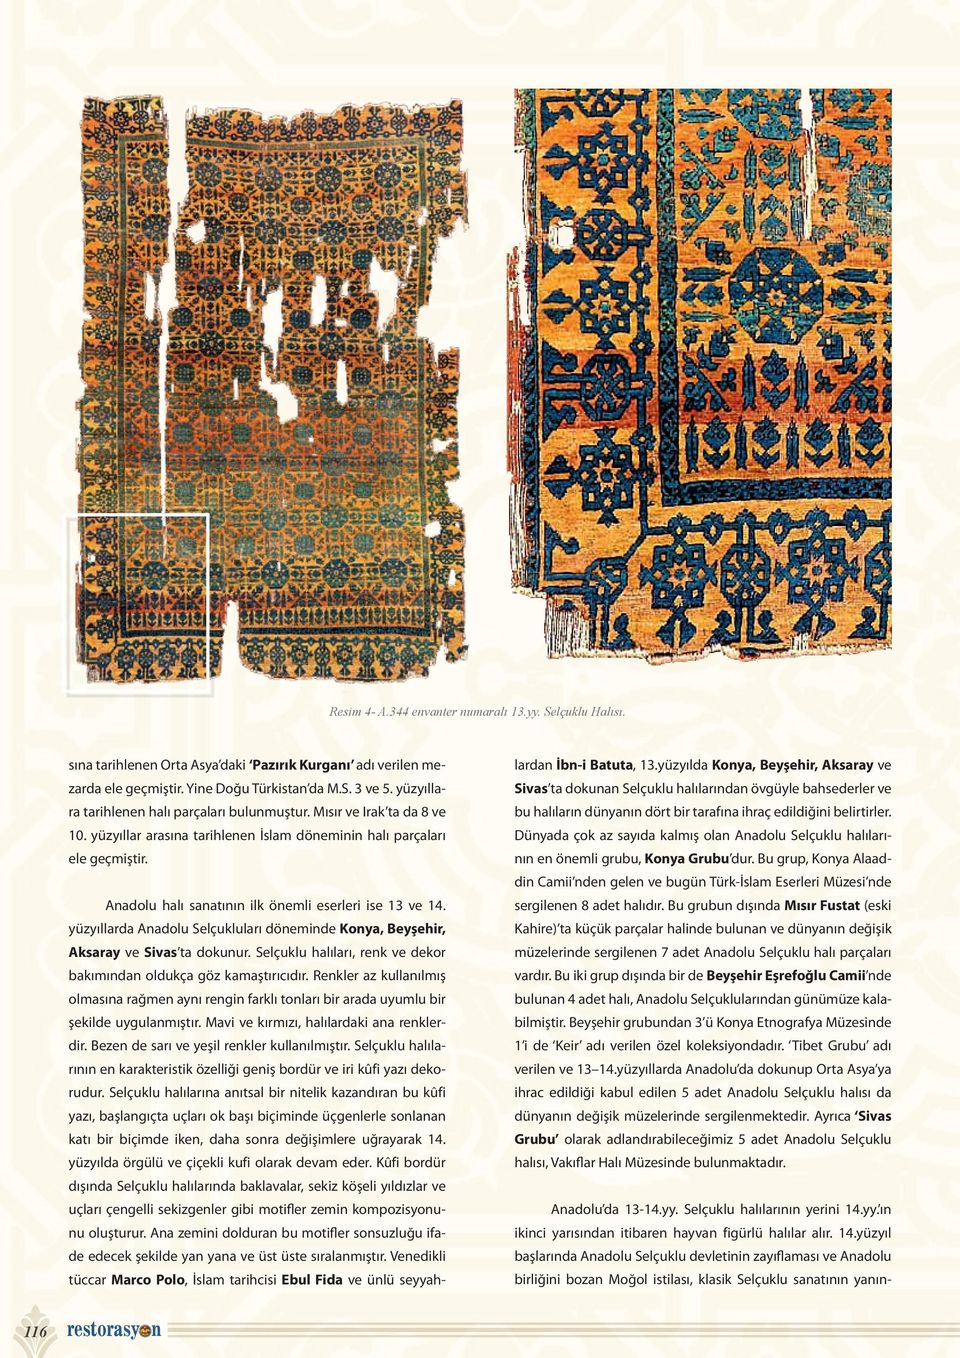 Anadolu halı sanatının ilk önemli eserleri ise 13 ve 14. yüzyıllarda Anadolu Selçukluları döneminde Konya, Beyşehir, Aksaray ve Sivas ta dokunur.